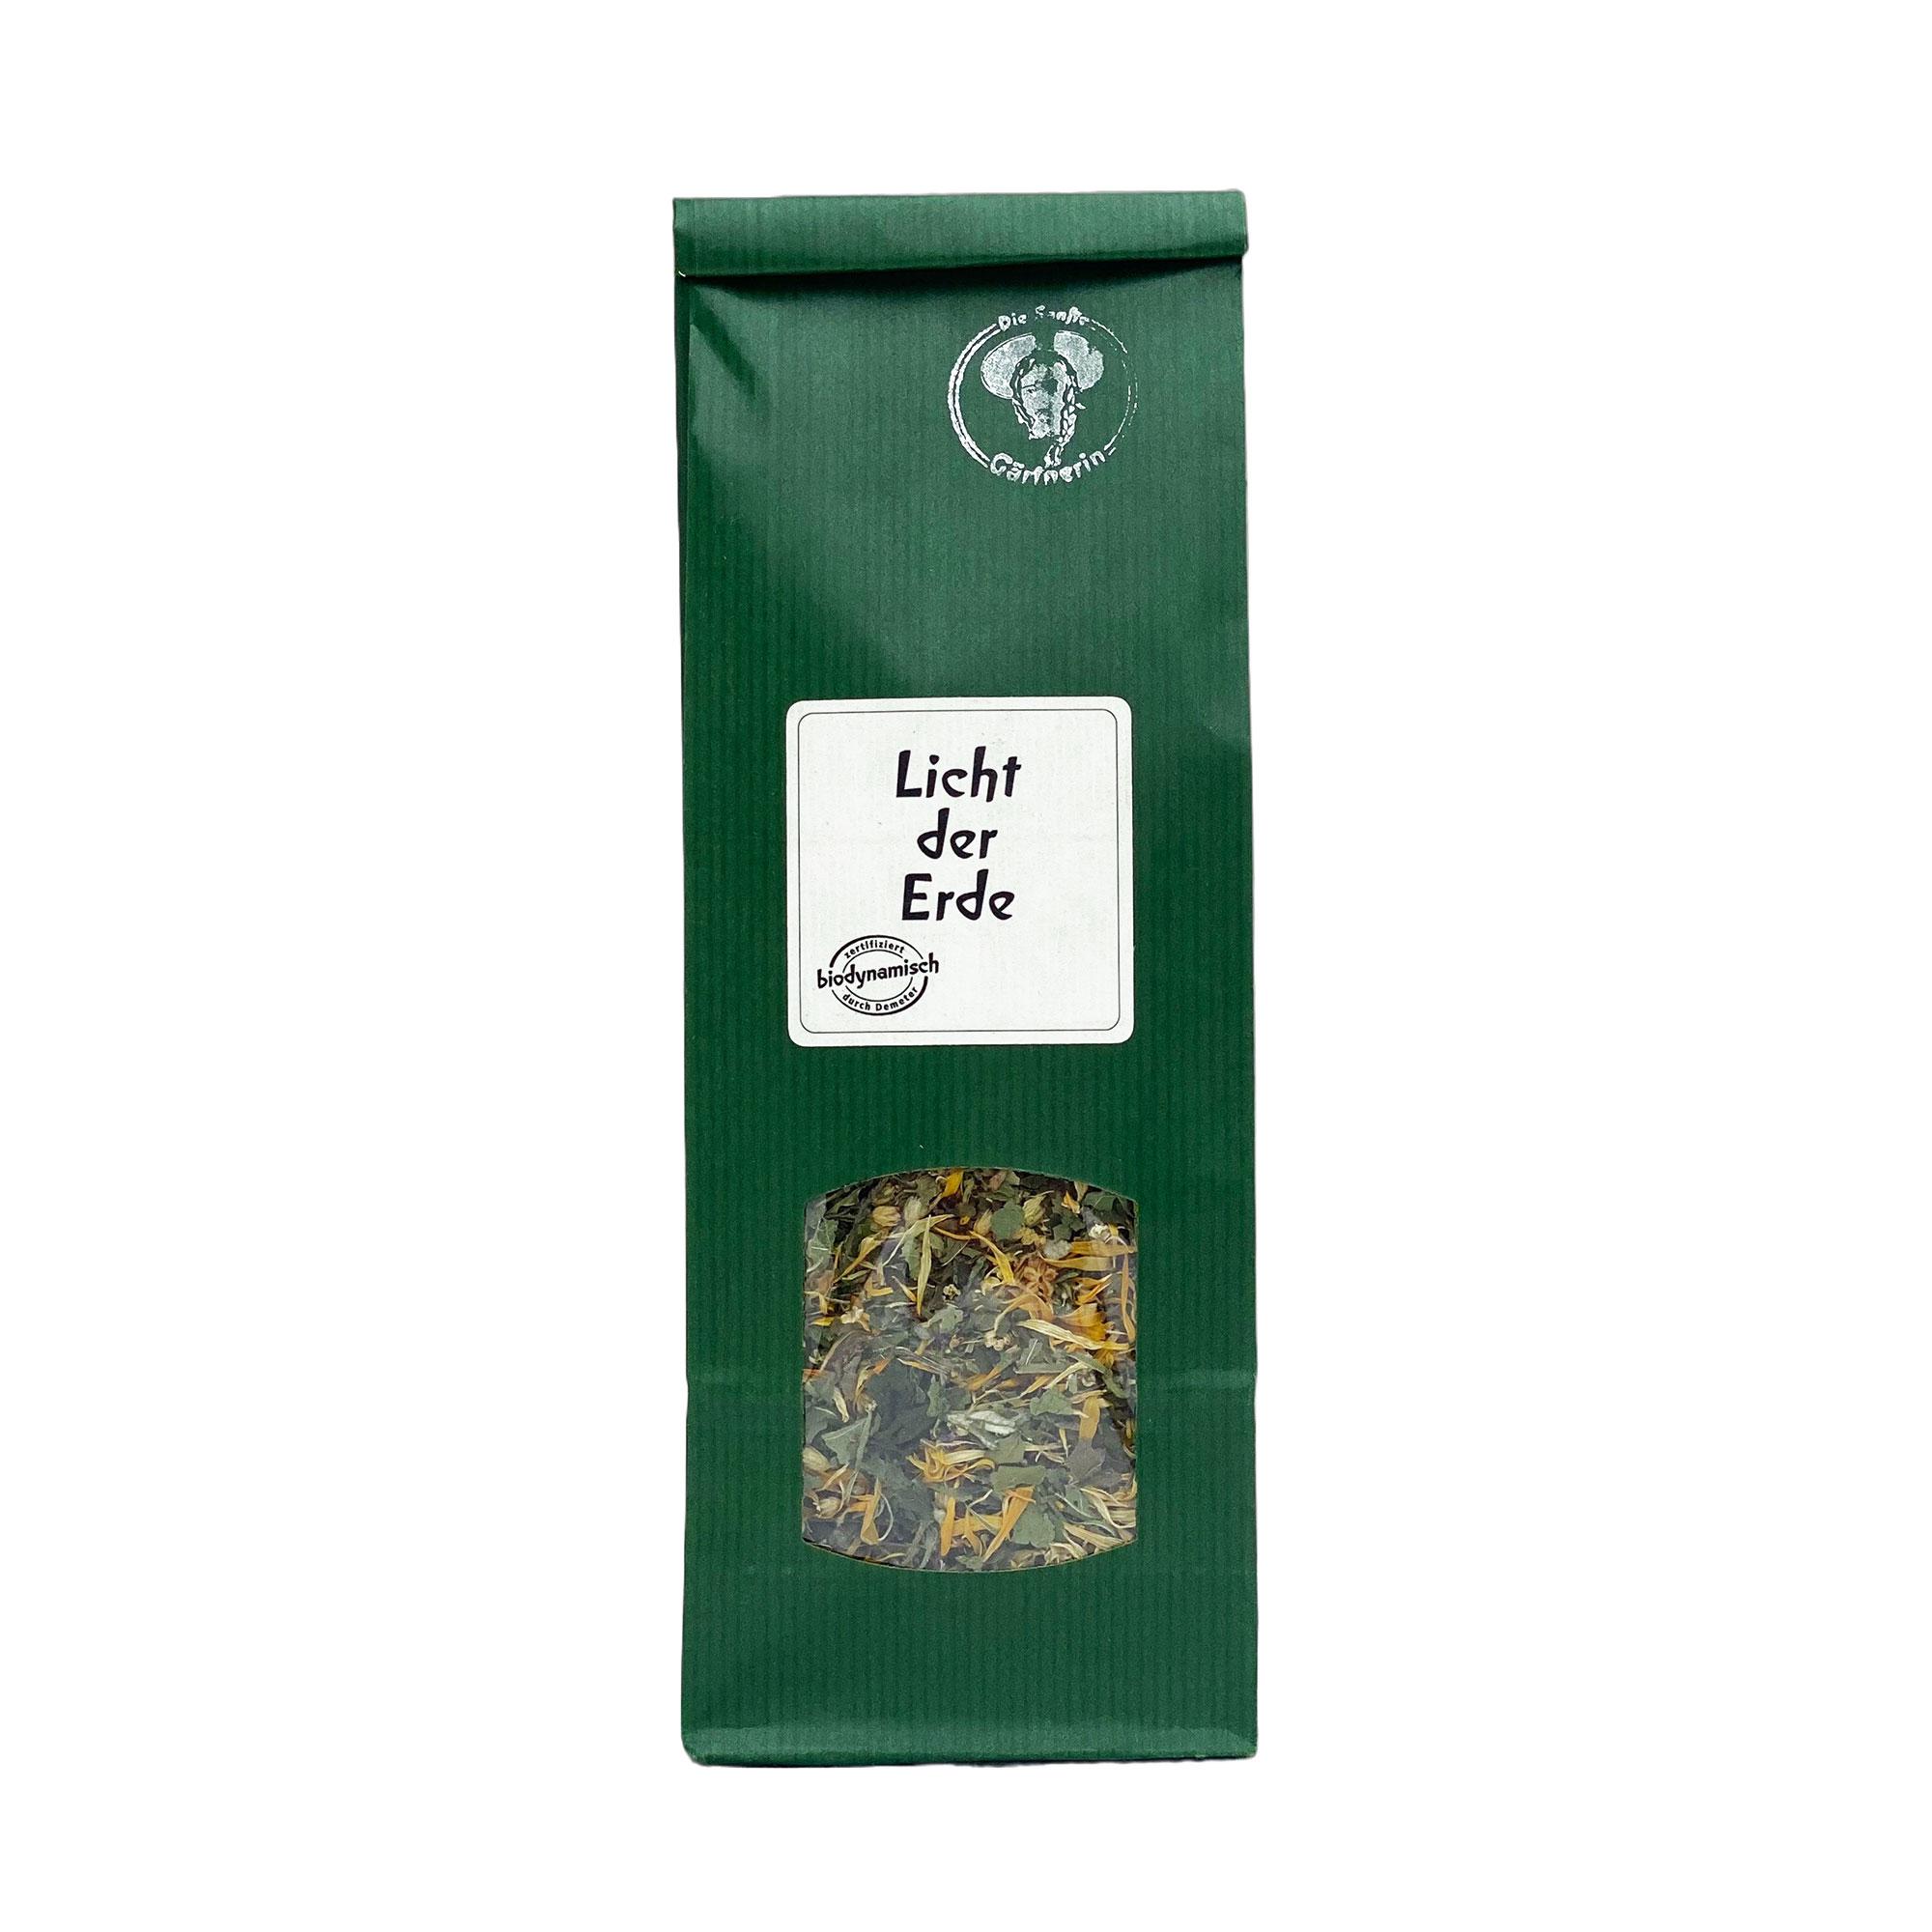 Licht der Erde - Tee Demeter, Die Sanfte Gärtnerin 35 g